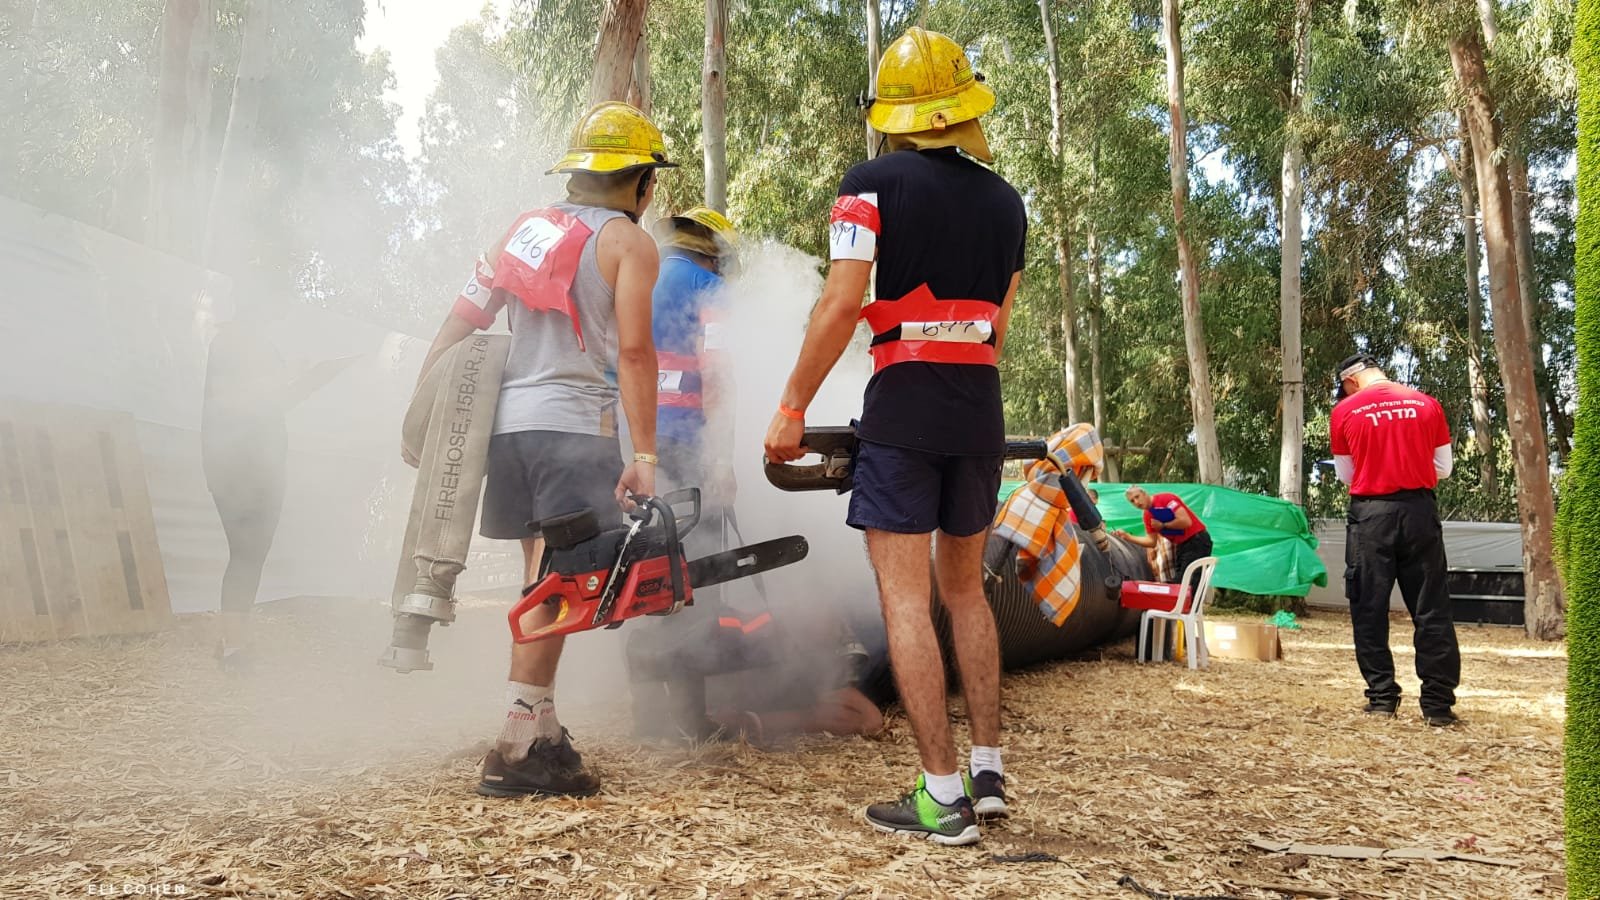 لأول مرة: سلطة الإطفاء والإنقاذ تجري اختبارات تصنيف للمتقدمين لوظيفة رجال إطفاء من المجتمع العربي-4